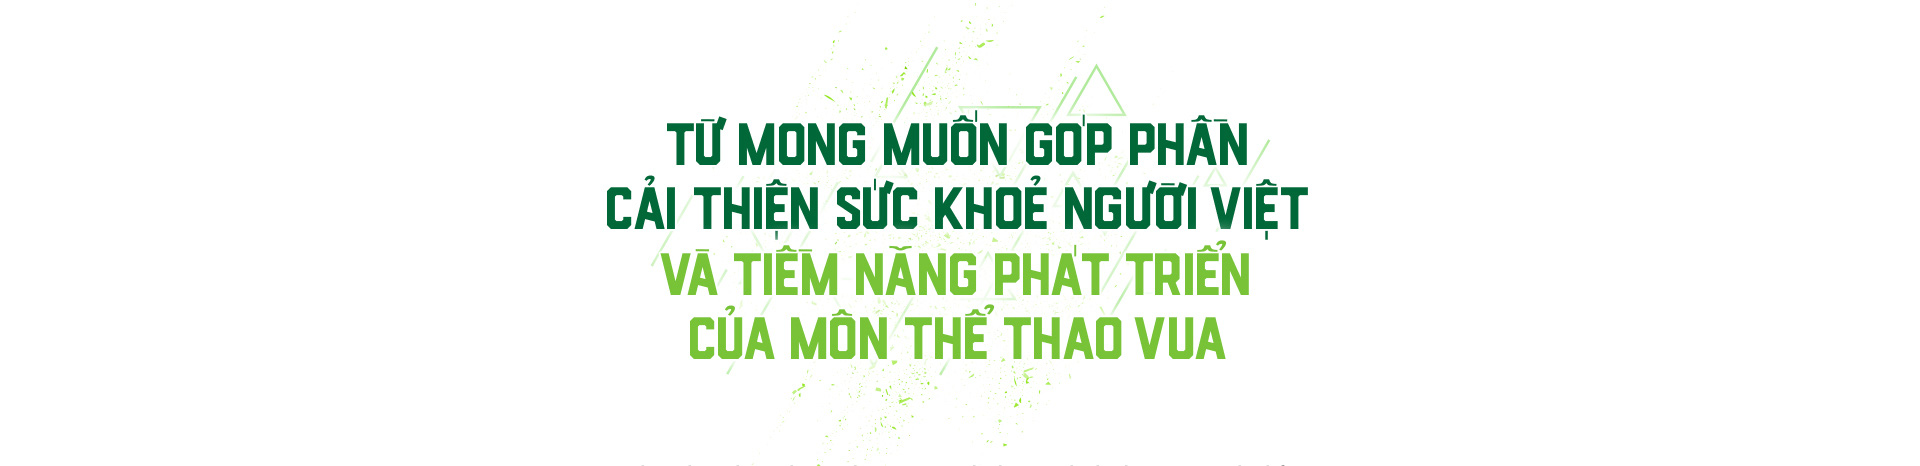 Herbalife - Dinh dưỡng lành mạnh tiếp sức các đội tuyển bóng đá Việt Nam - Ảnh 1.